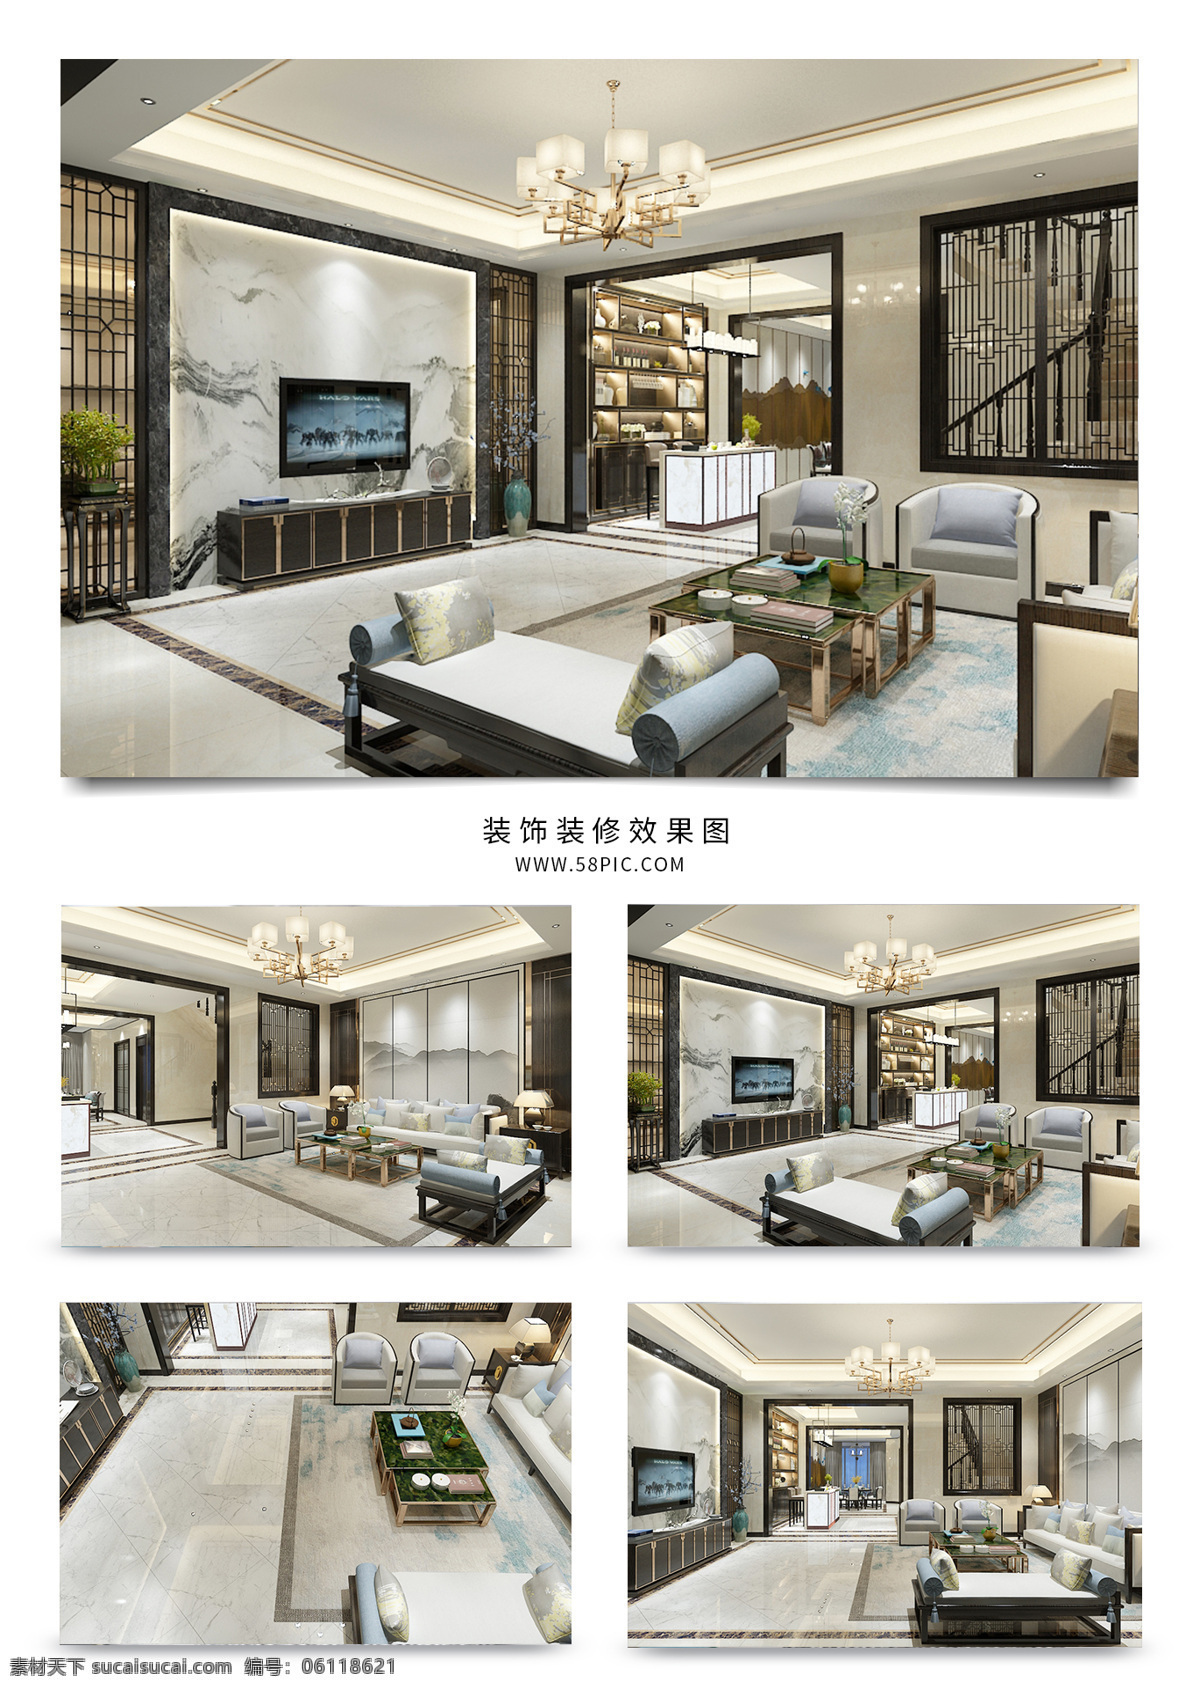 新 中式 客厅 效果图 明亮 简洁 背景墙 地板 沙发 窗帘 吊灯 挂画 椅子 模型 现代 茶几 门